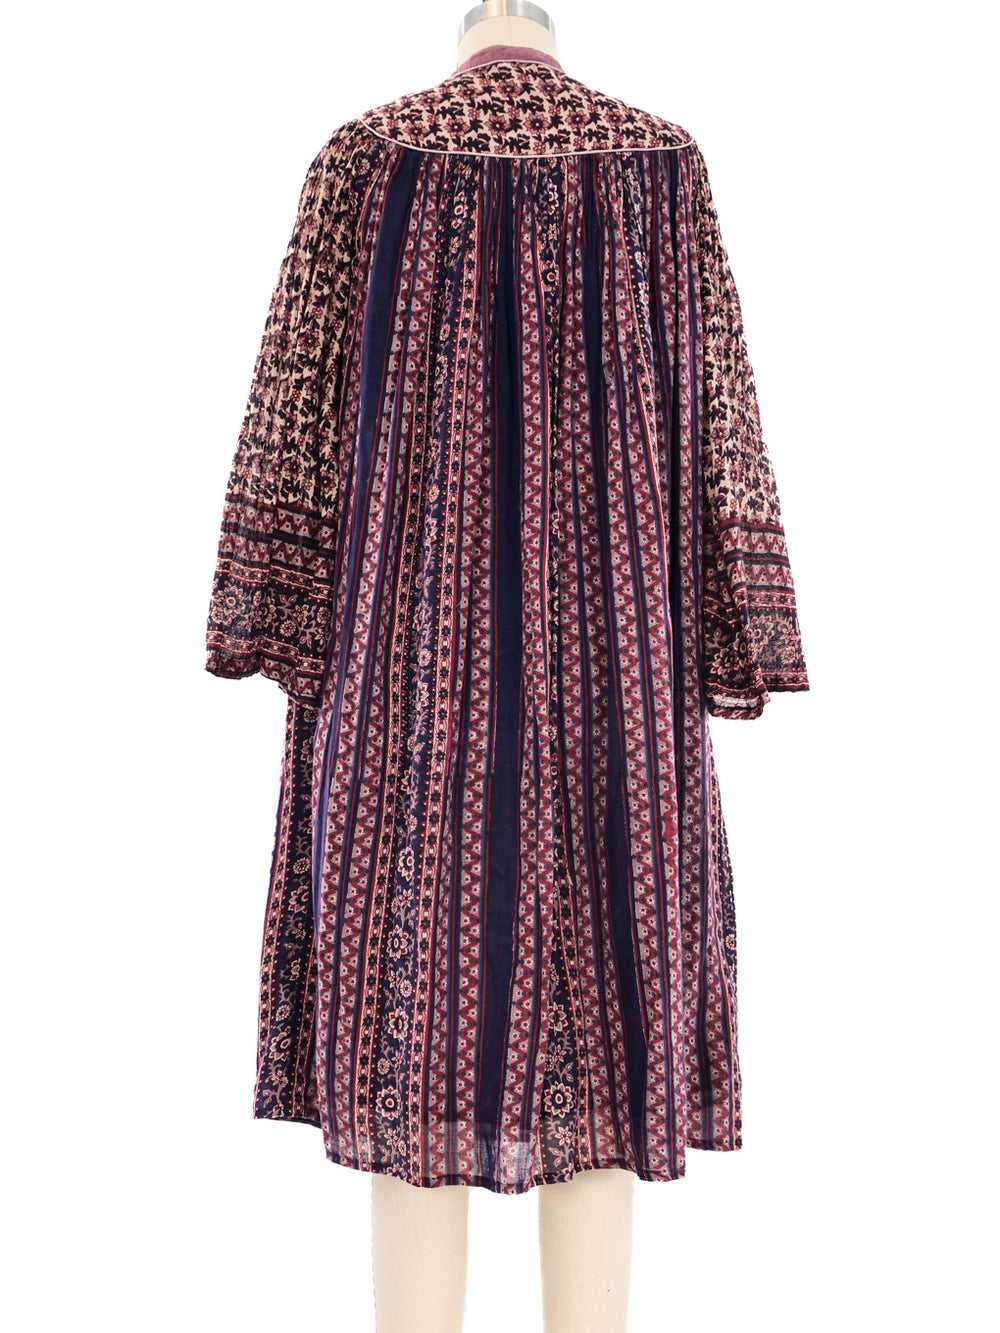 Cotton Gauze Indian Dress - image 4